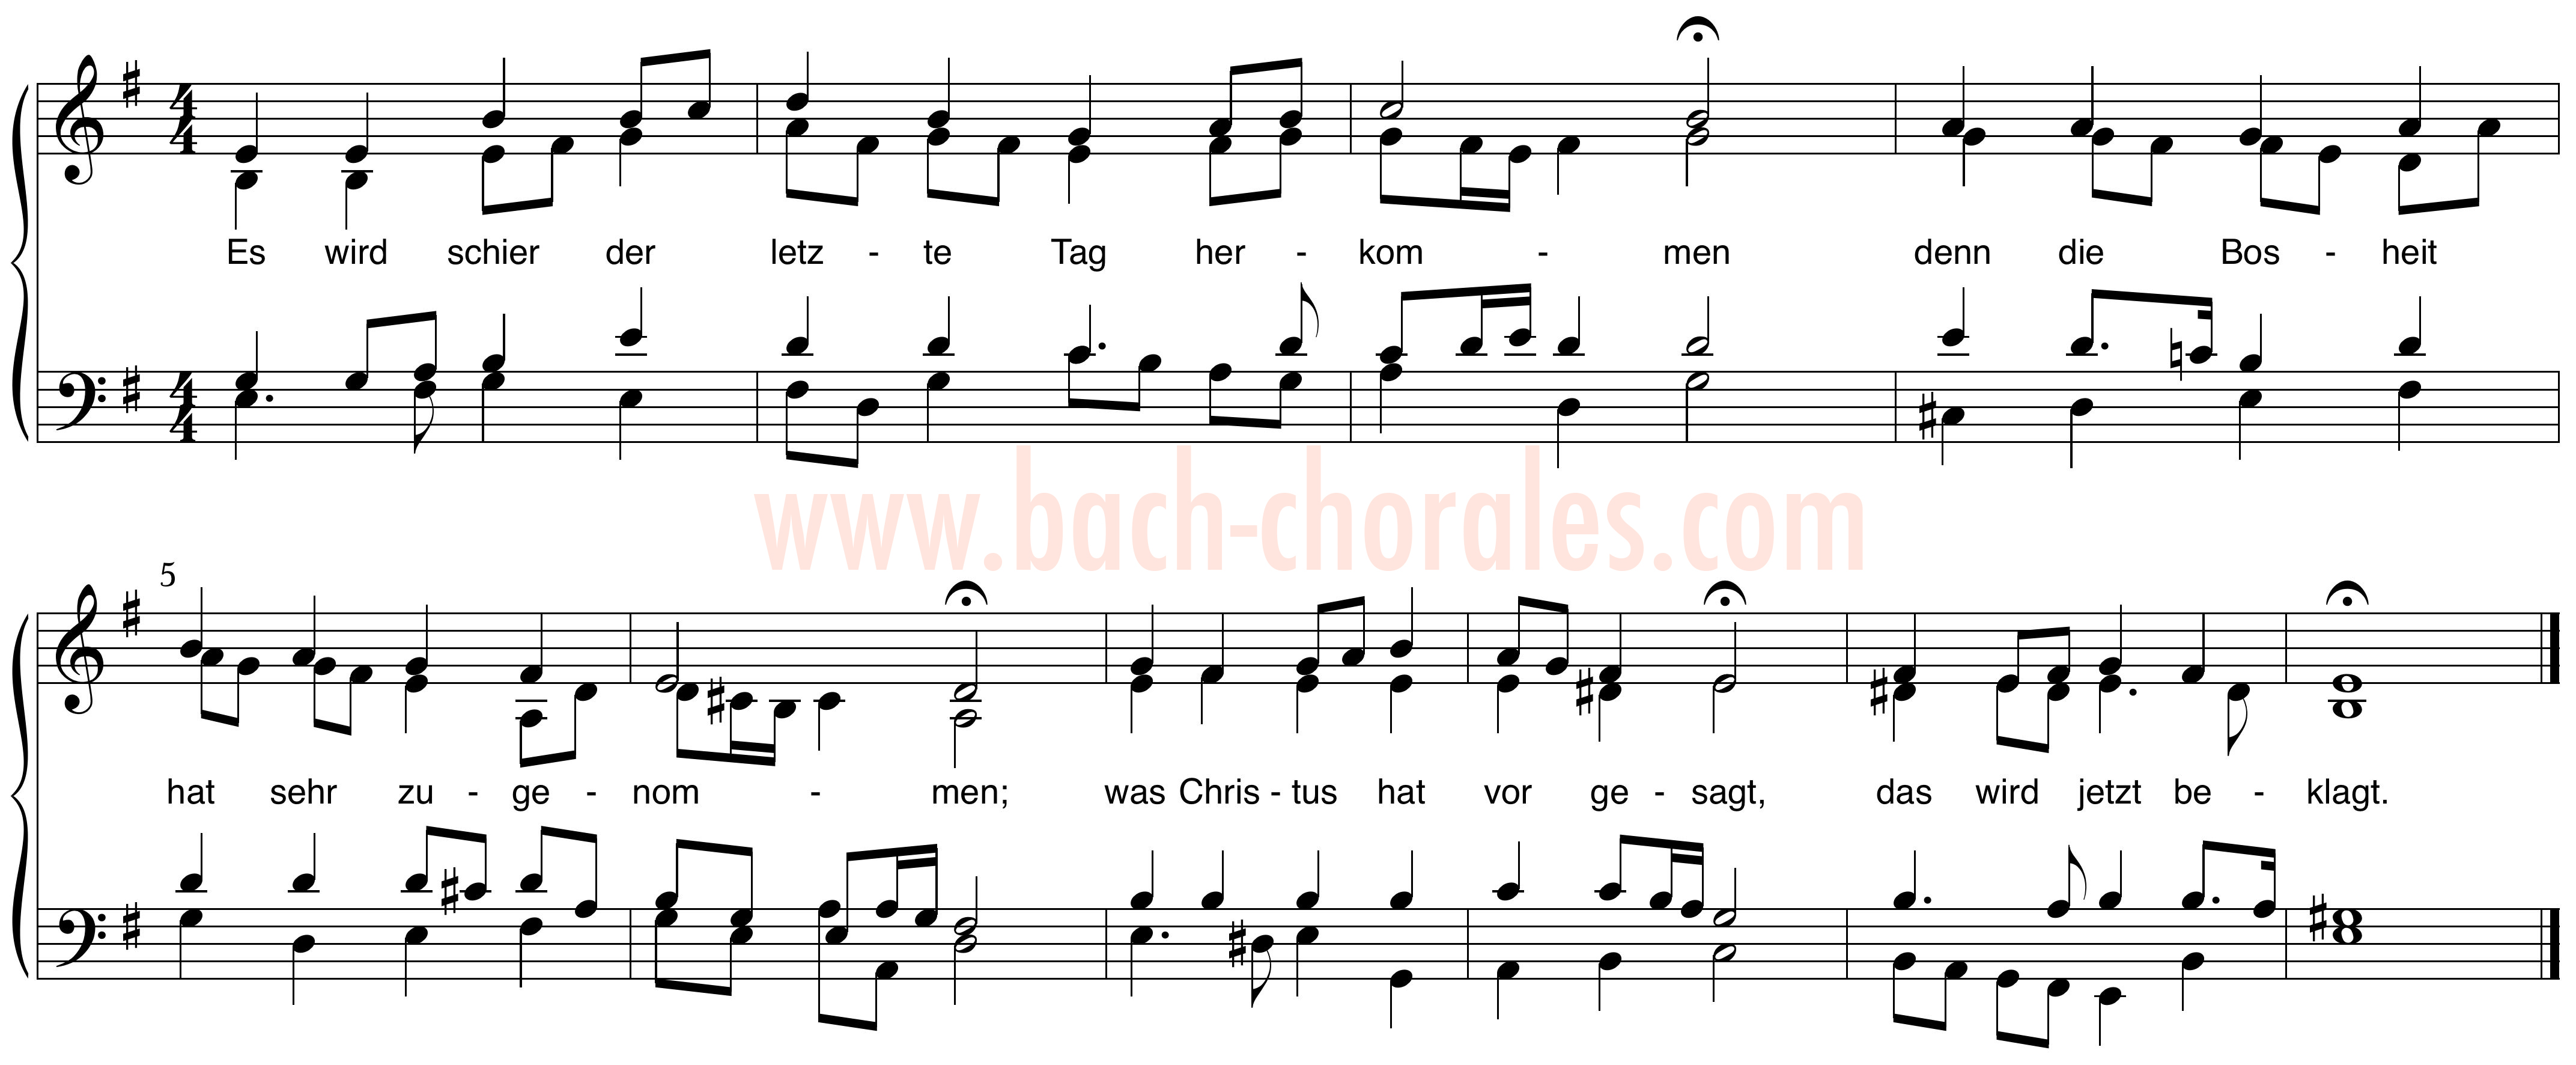 notenbeeld BWV 310 op https://www.bach-chorales.com/